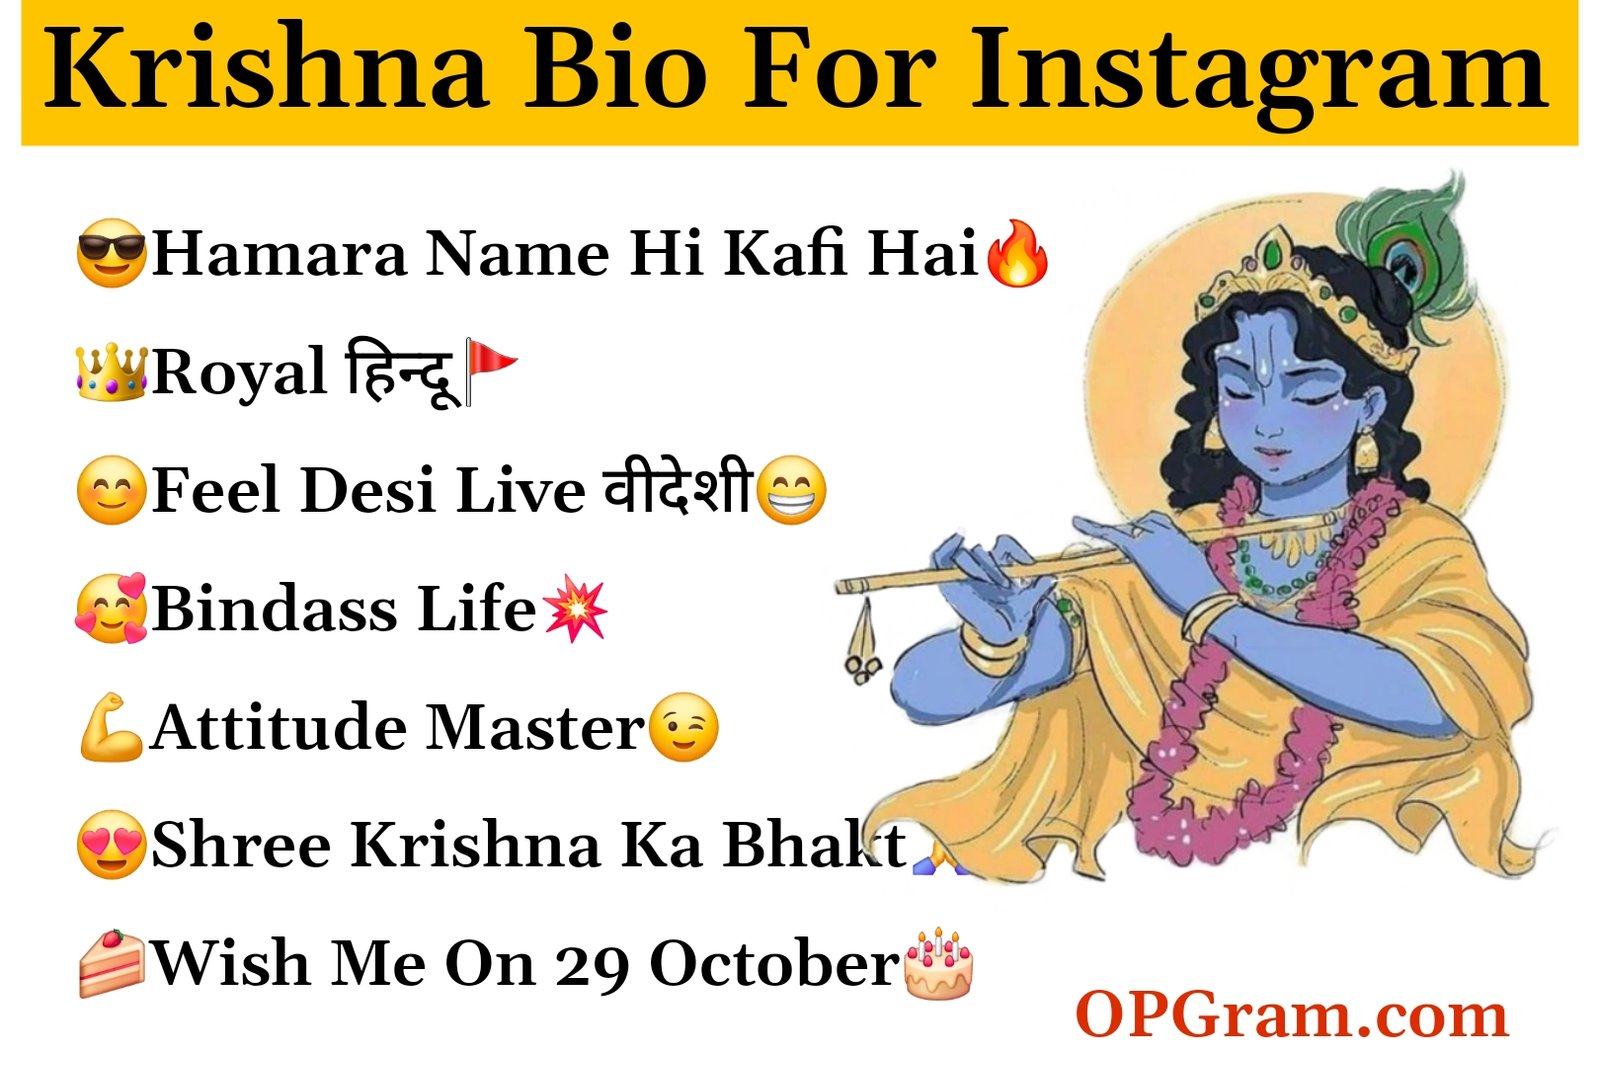 Krishna bio for Instagram